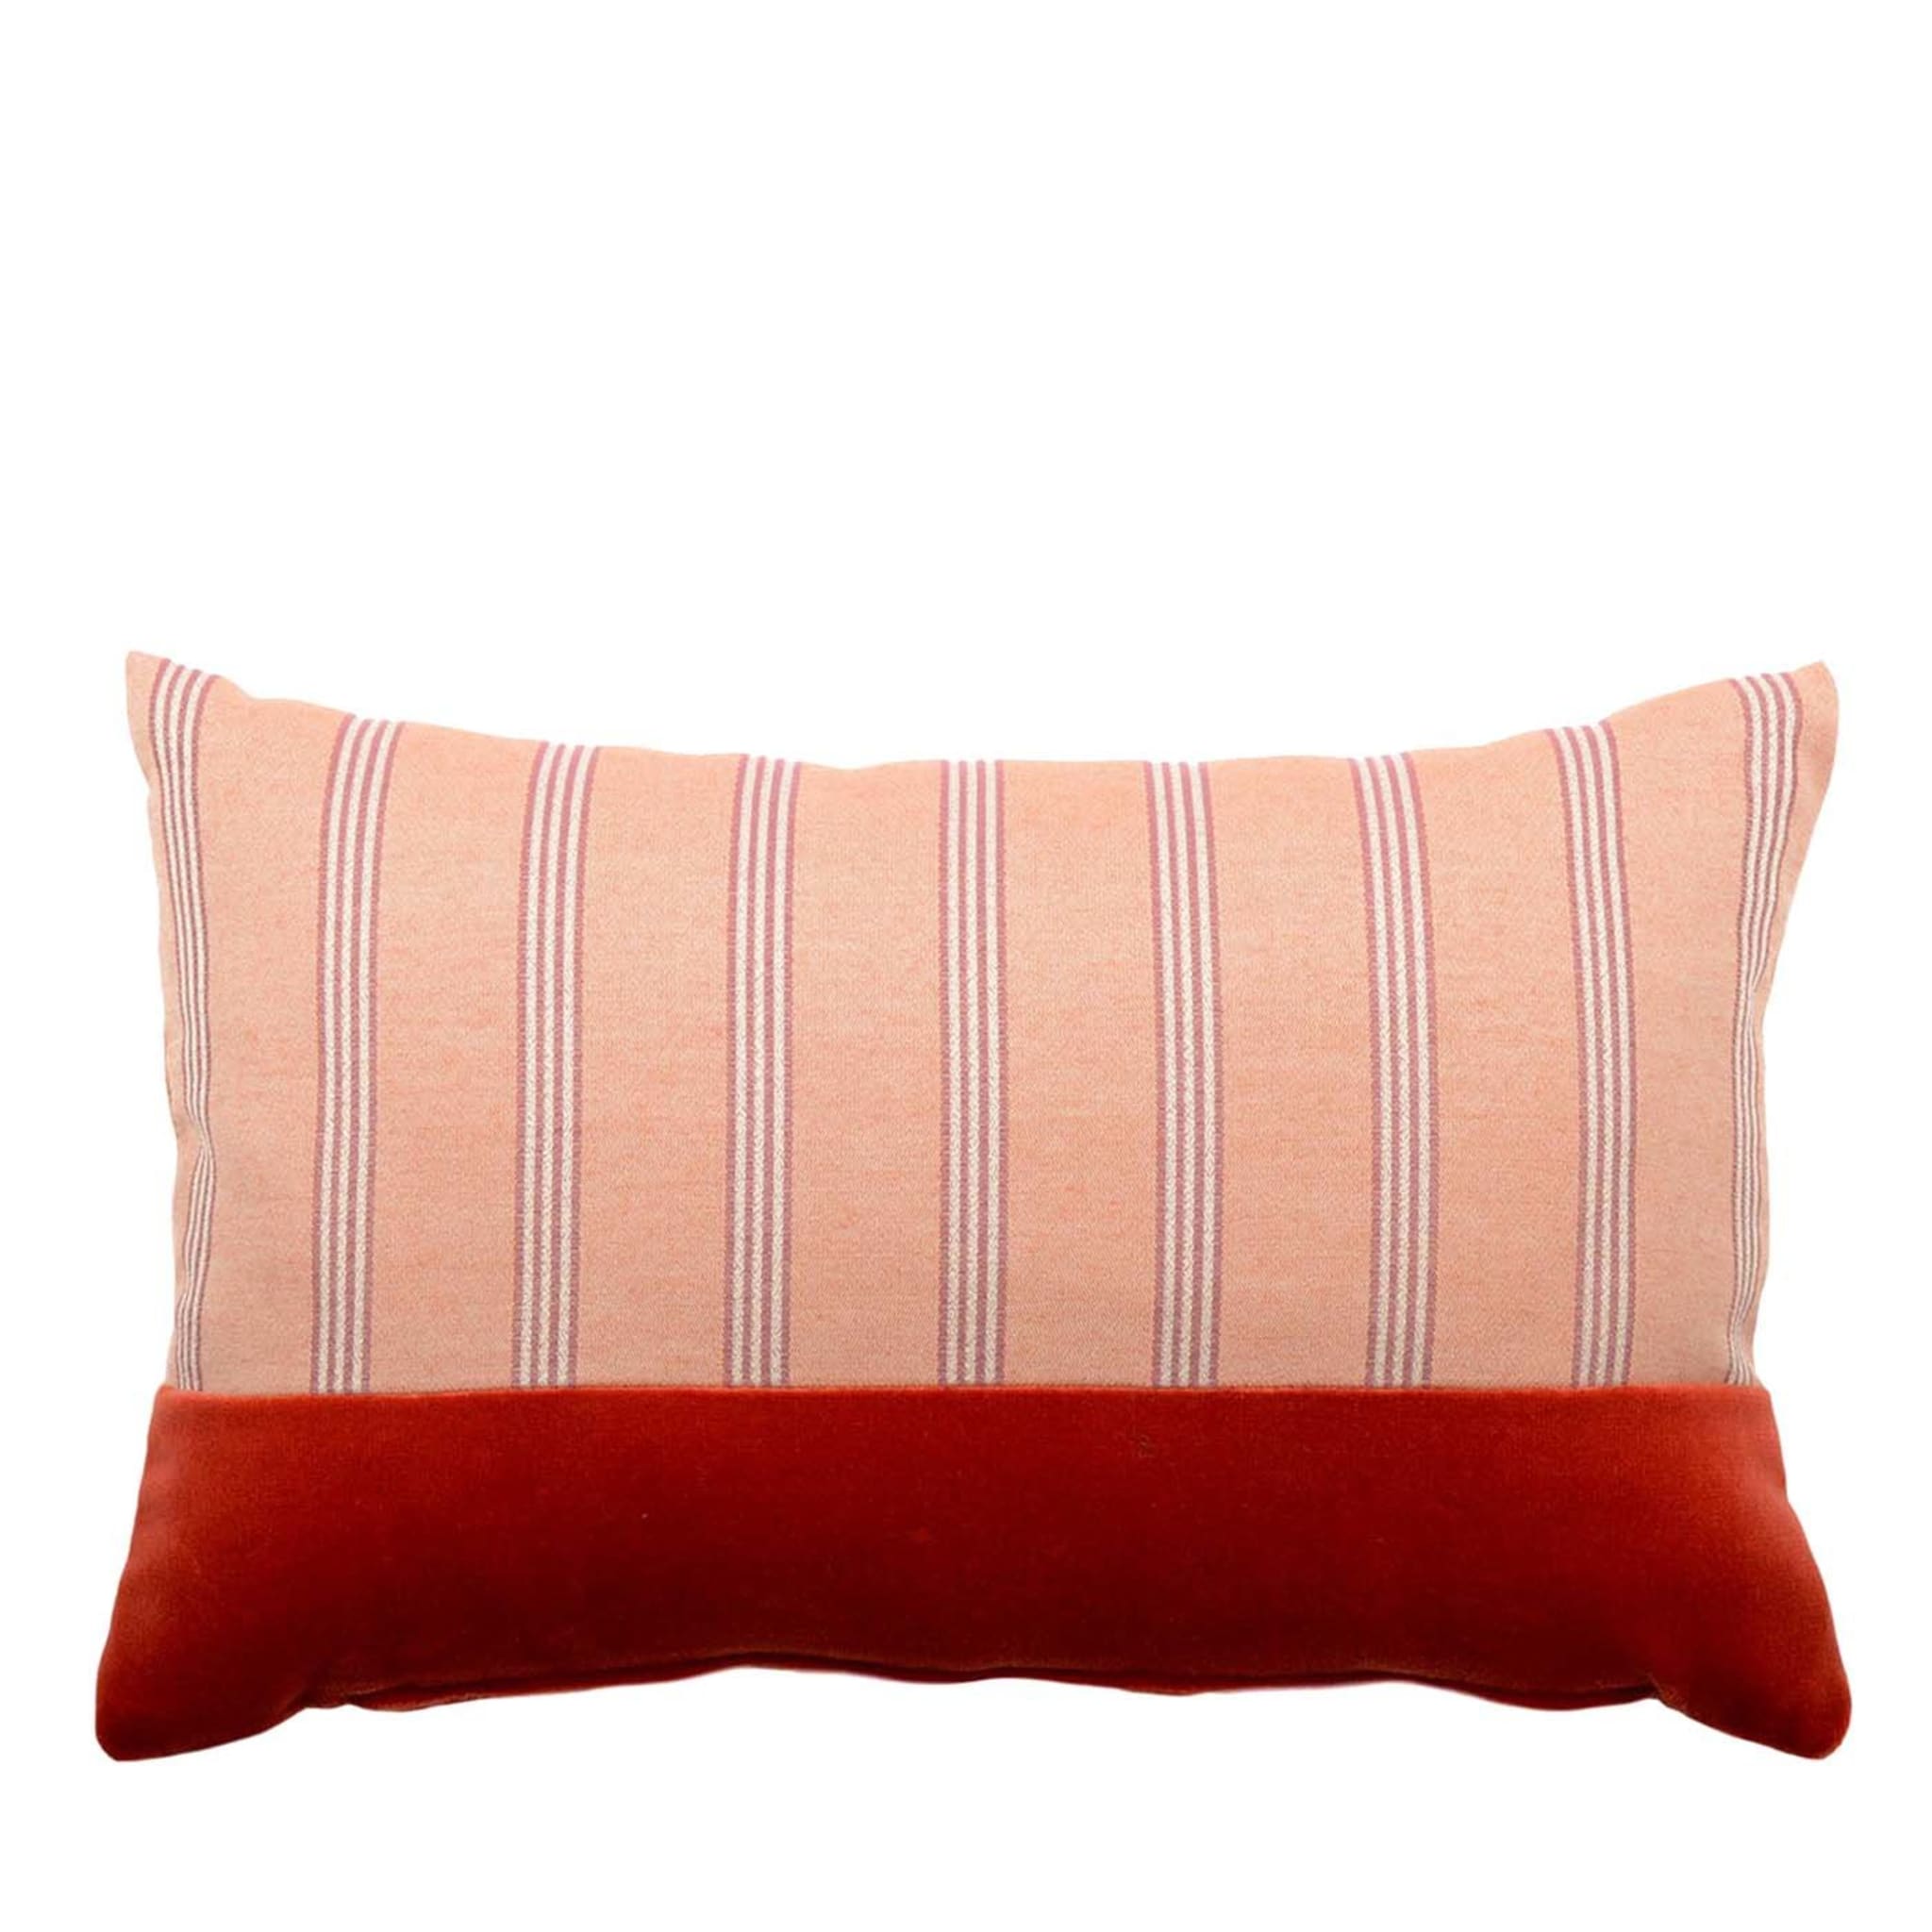 Rectangular Striped Jaquard Throw Cushion - Main view